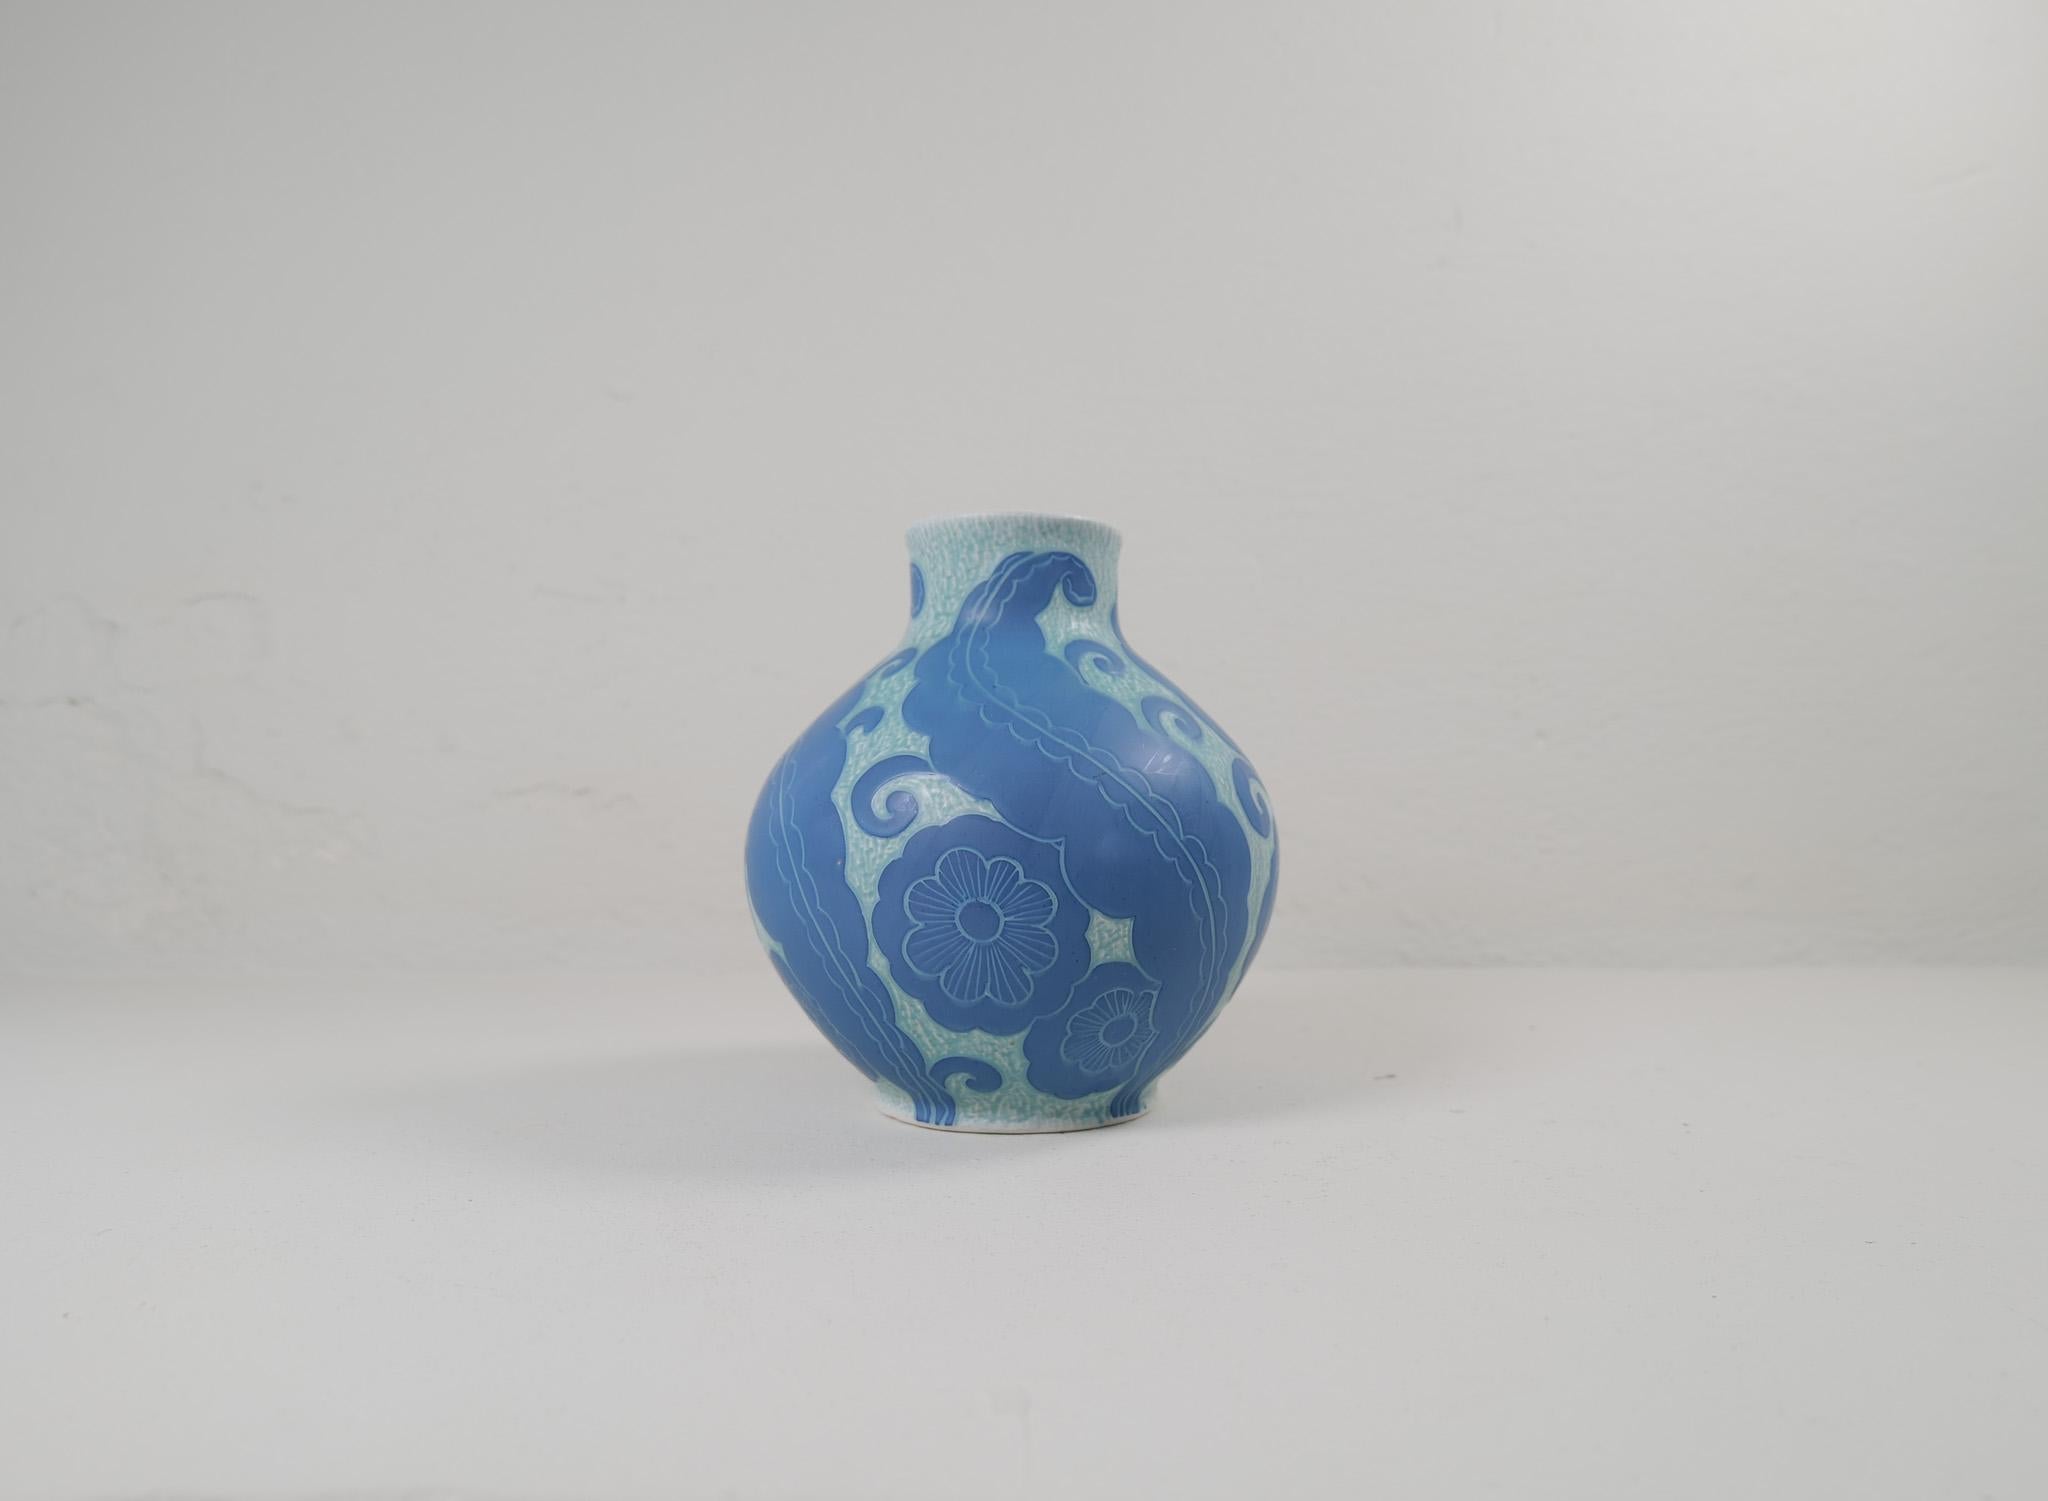 Vase Art Déco Sgraffito décoré d'un motif floral, par Josef Ekberg pour Gustavsberg.
Le sgraffite est une façon de combiner deux couches pour former un motif. La deuxième couche est grattée et il reste un fond bleu clair avec un magnifique motif sur